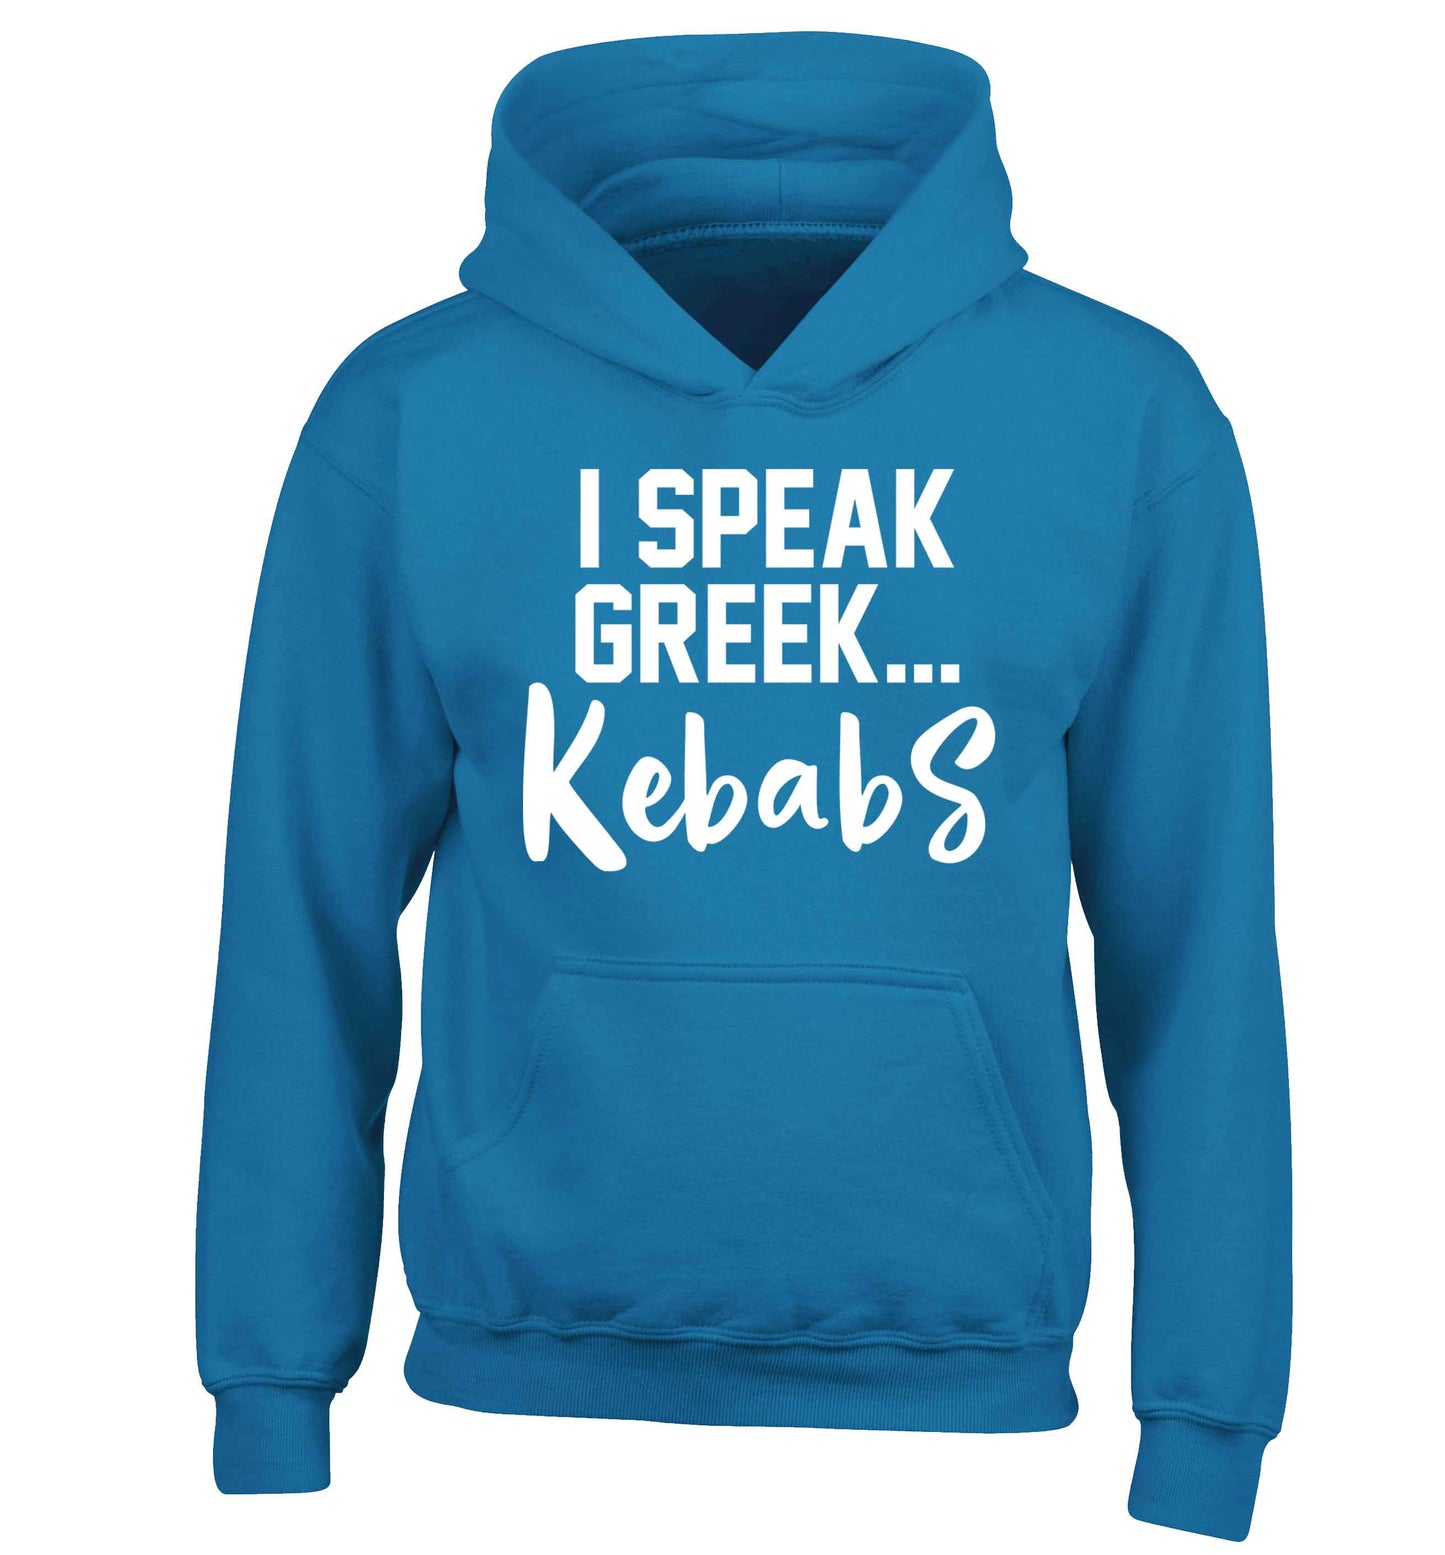 I speak Greek...kebabs children's blue hoodie 12-13 Years